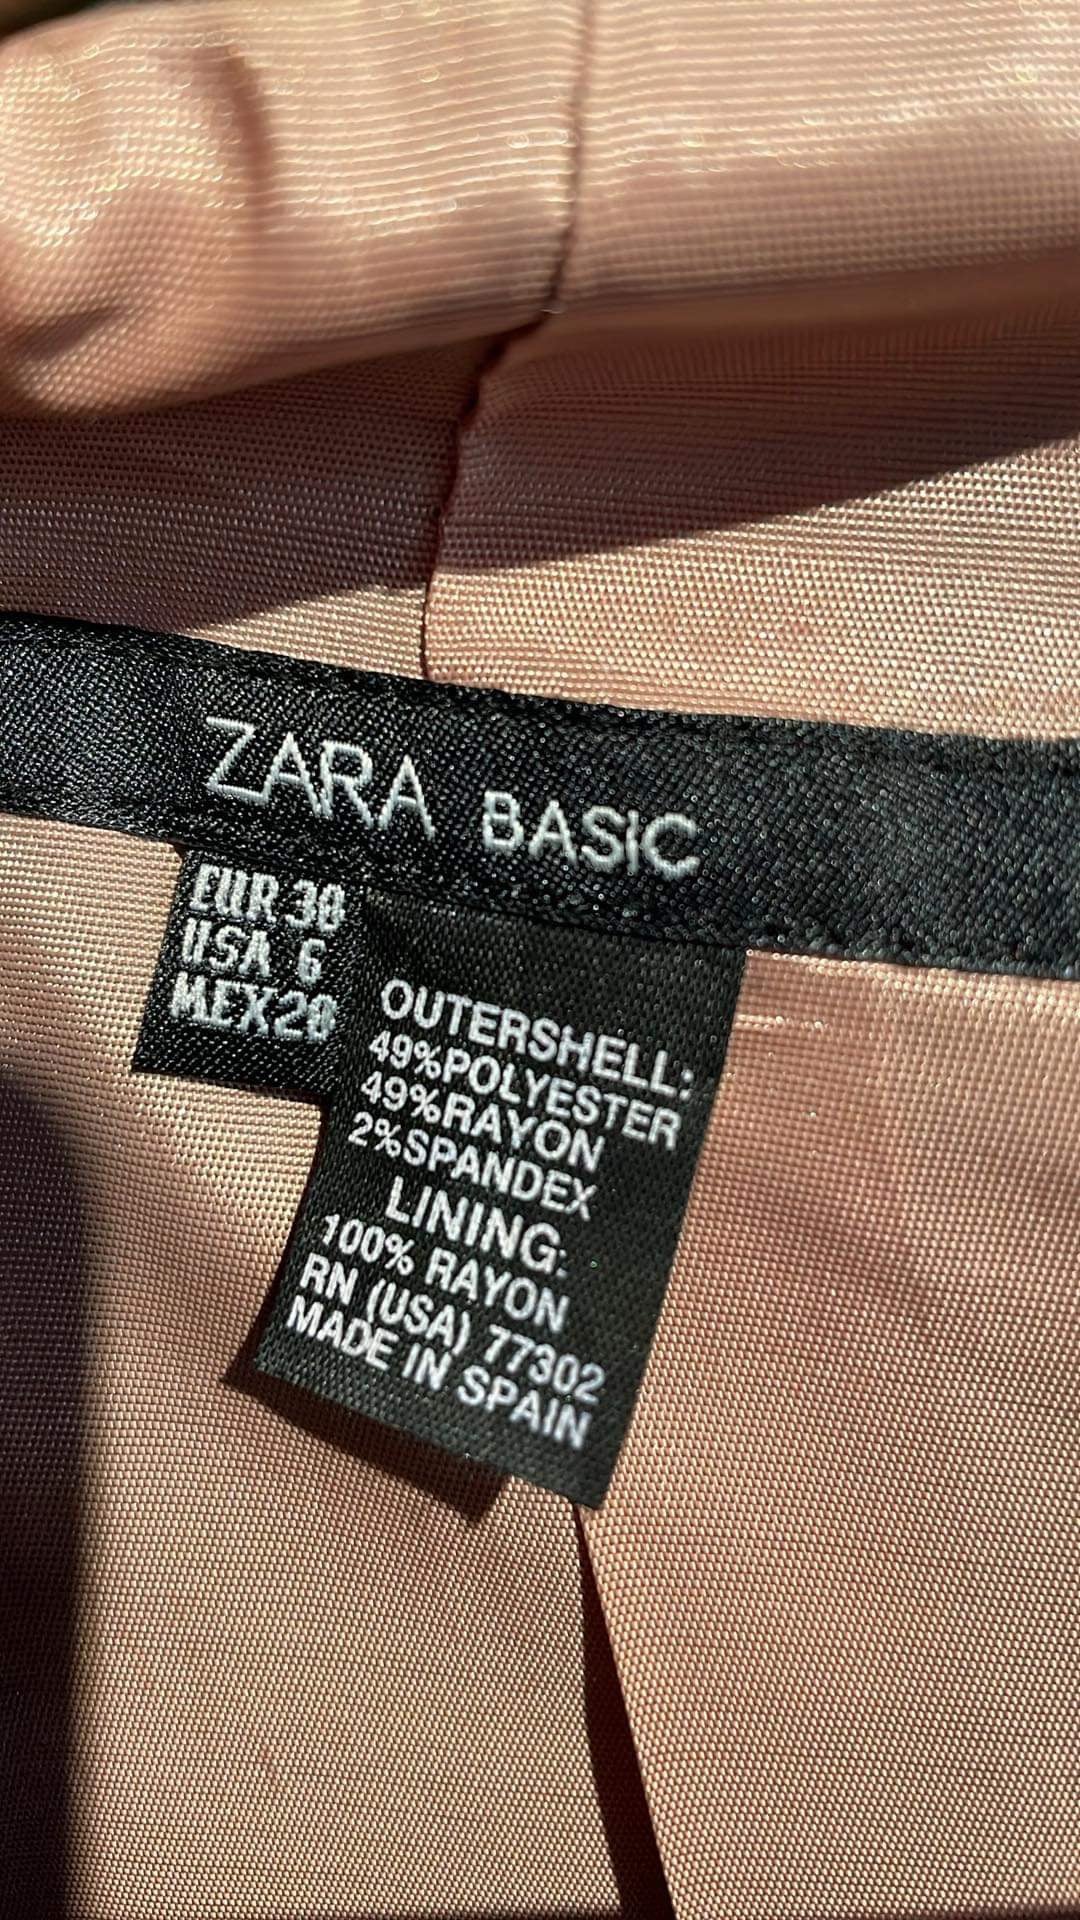 Zara - Blazer - Size: 38